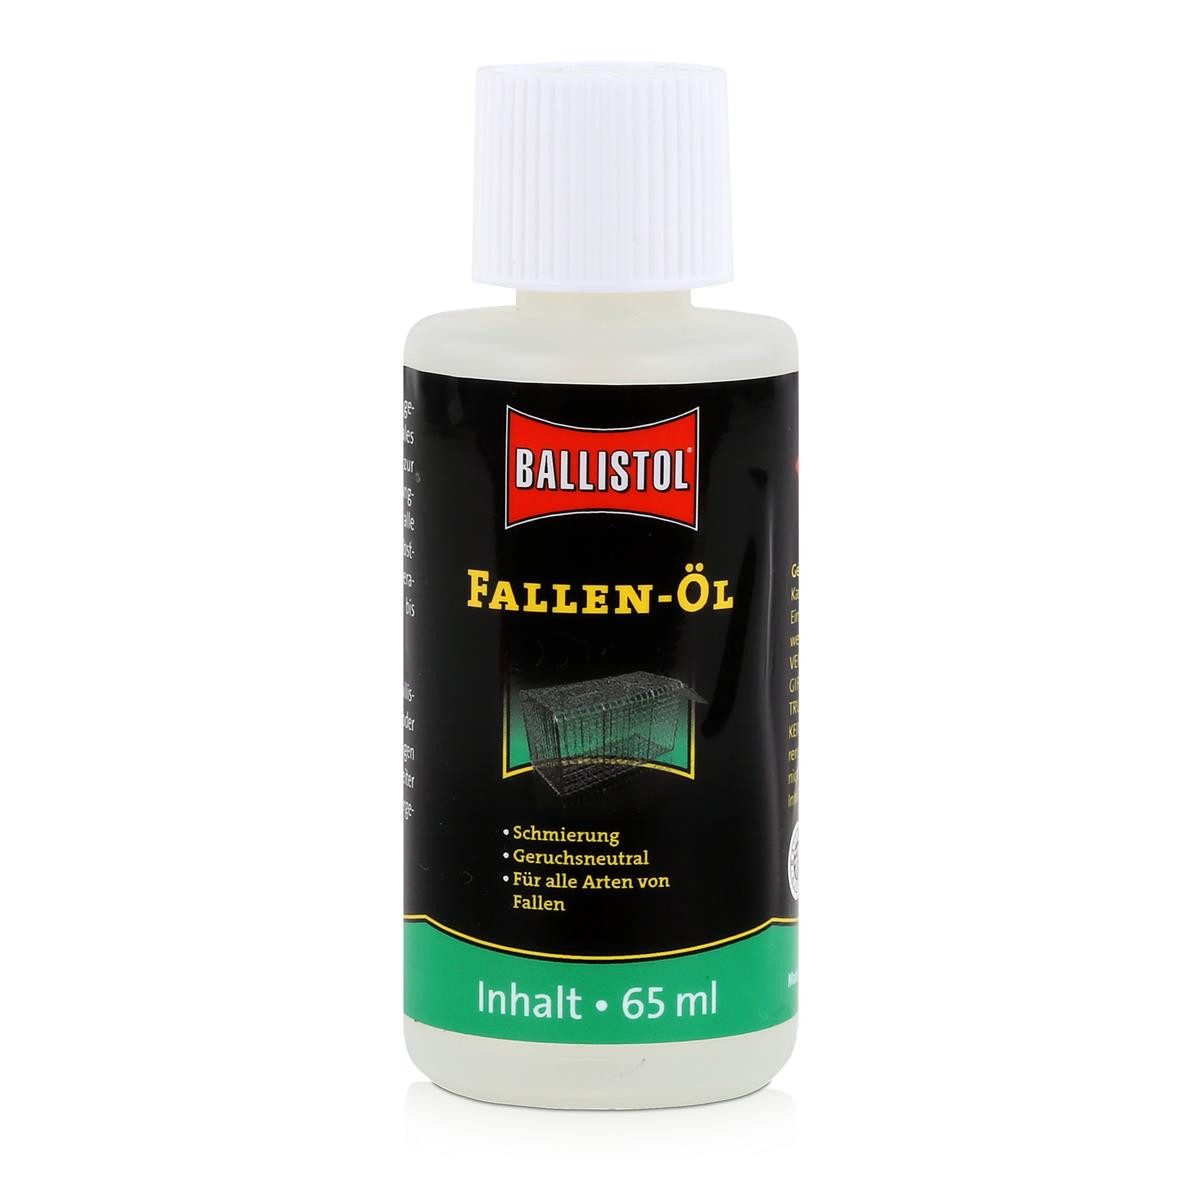 Ballistol Multifunktionsöl Ballistol Fallen-Öl 65ml - Für alle Arten von Fallen (1er Pack)